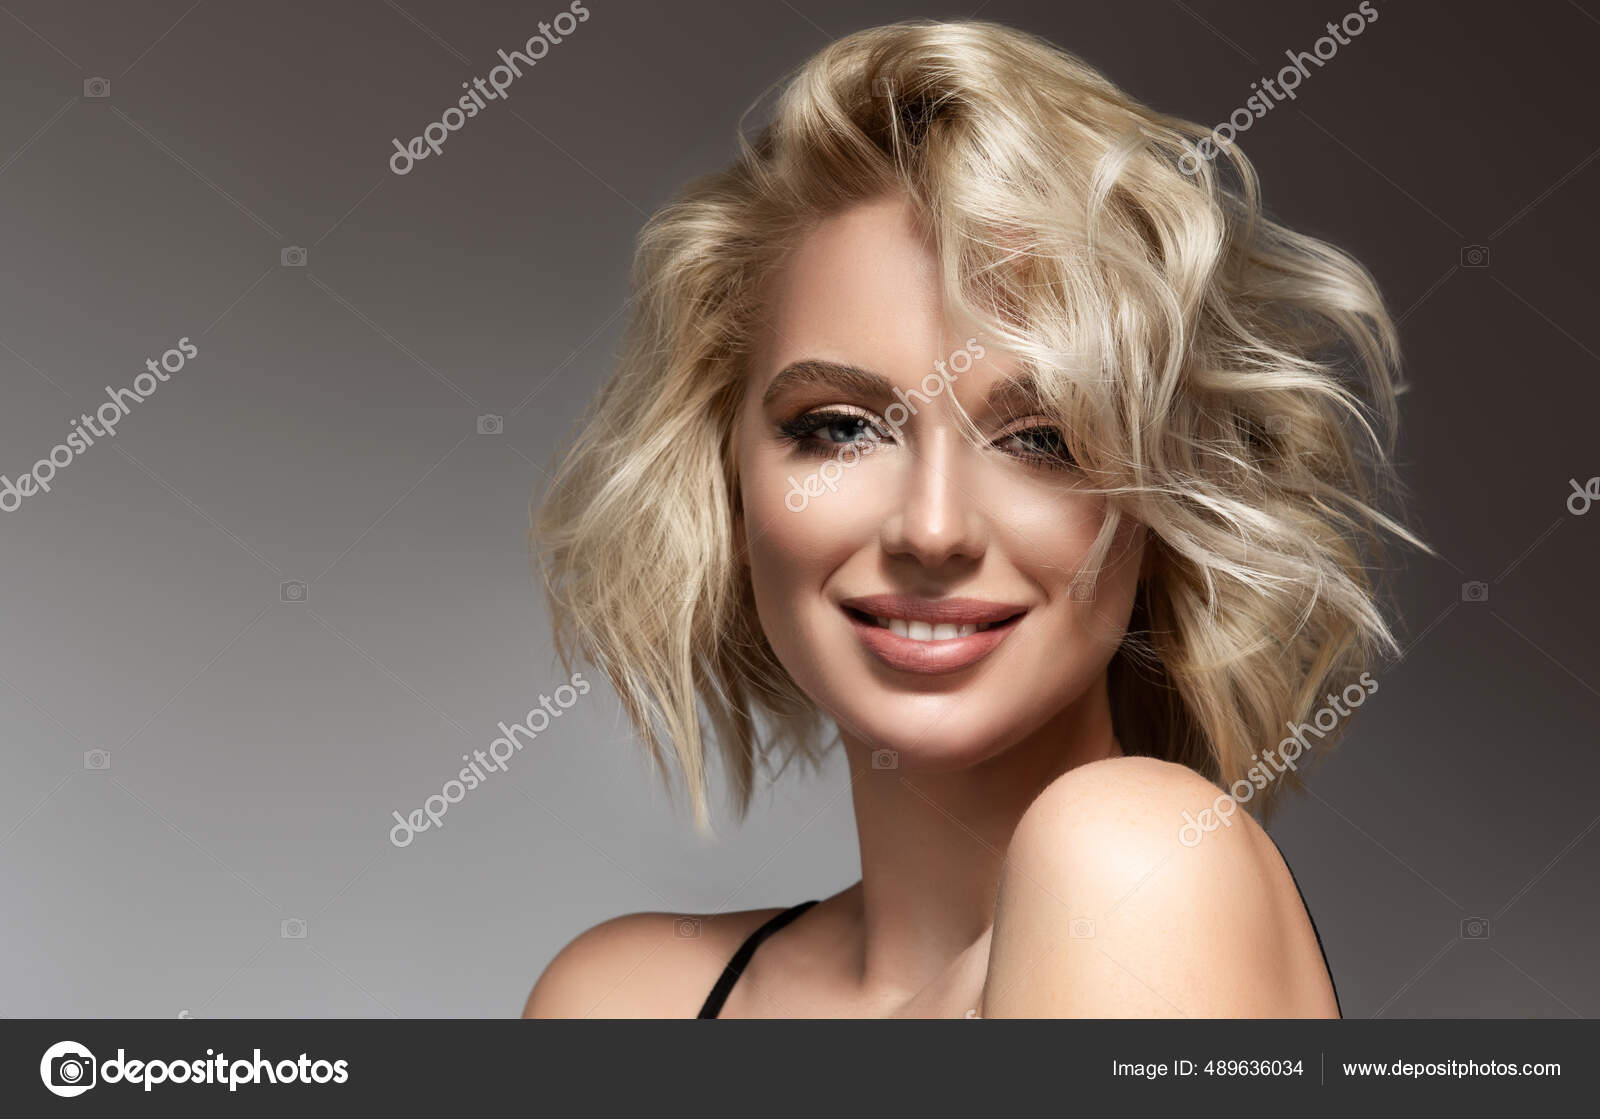 Cabelo loiro comprido lindo penteado mulher moda maquiagem